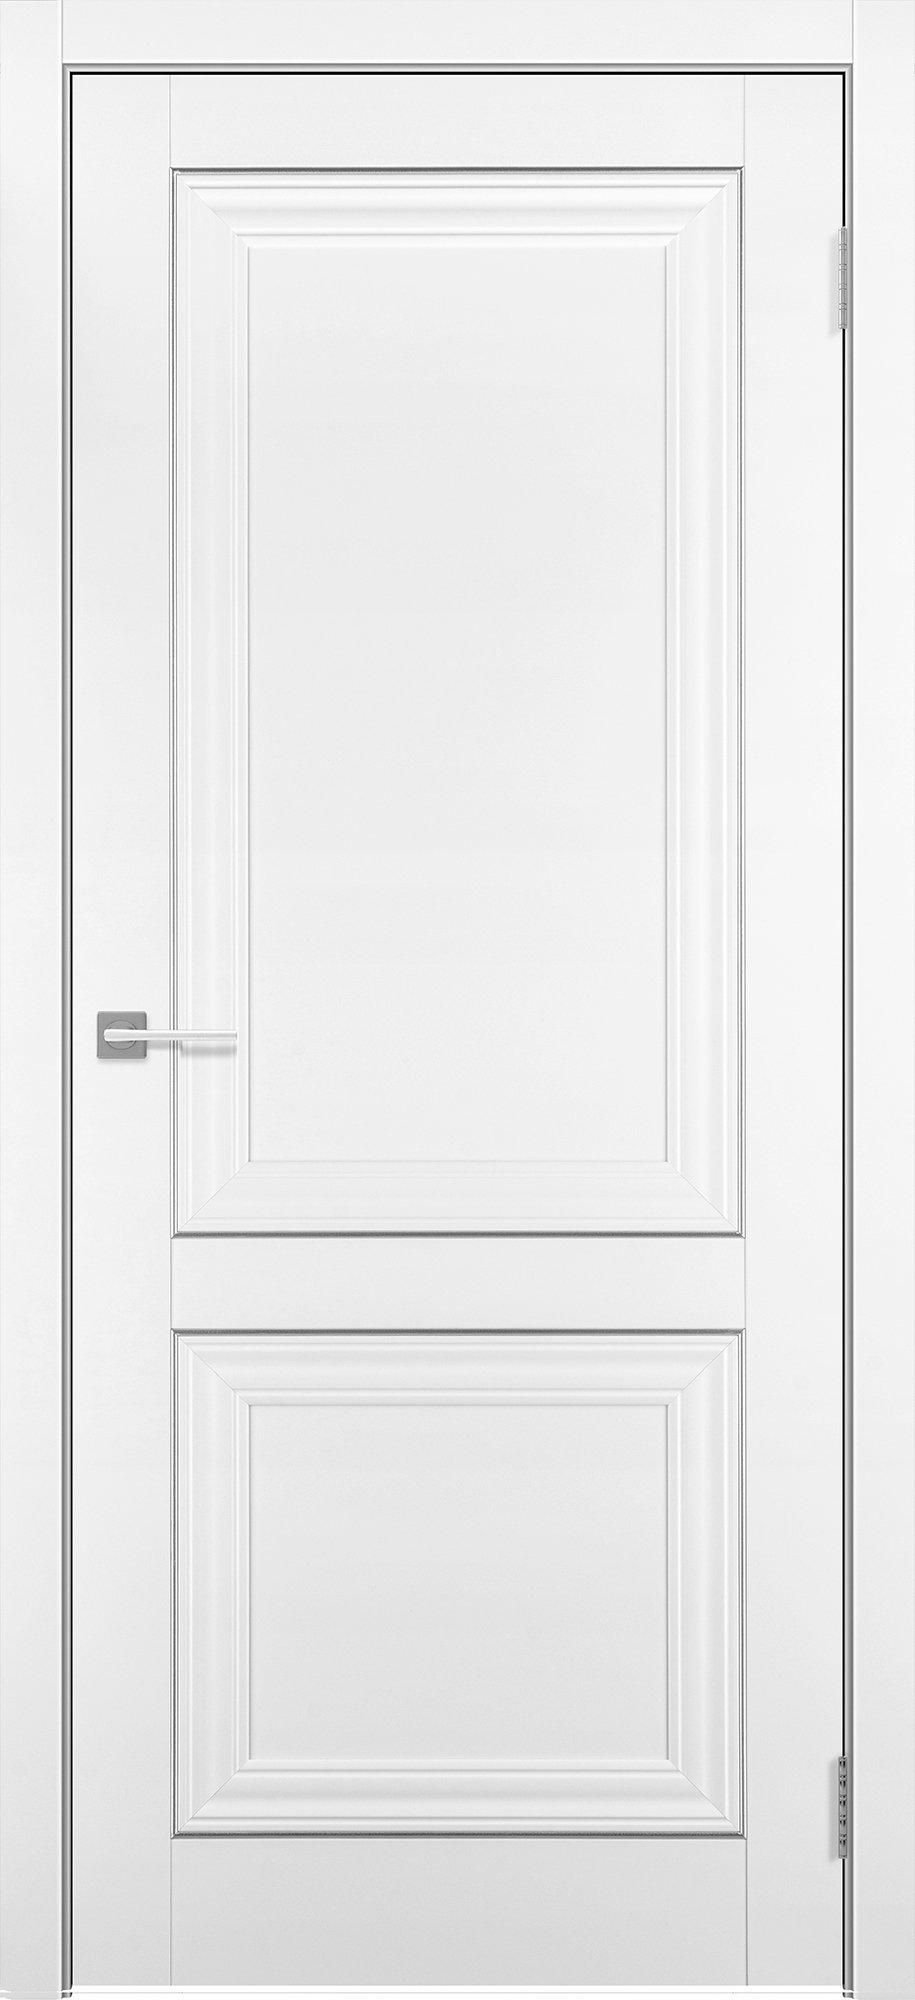 Межкомнатная дверь Гранд 8, покрытие Soft touch, белый бархат